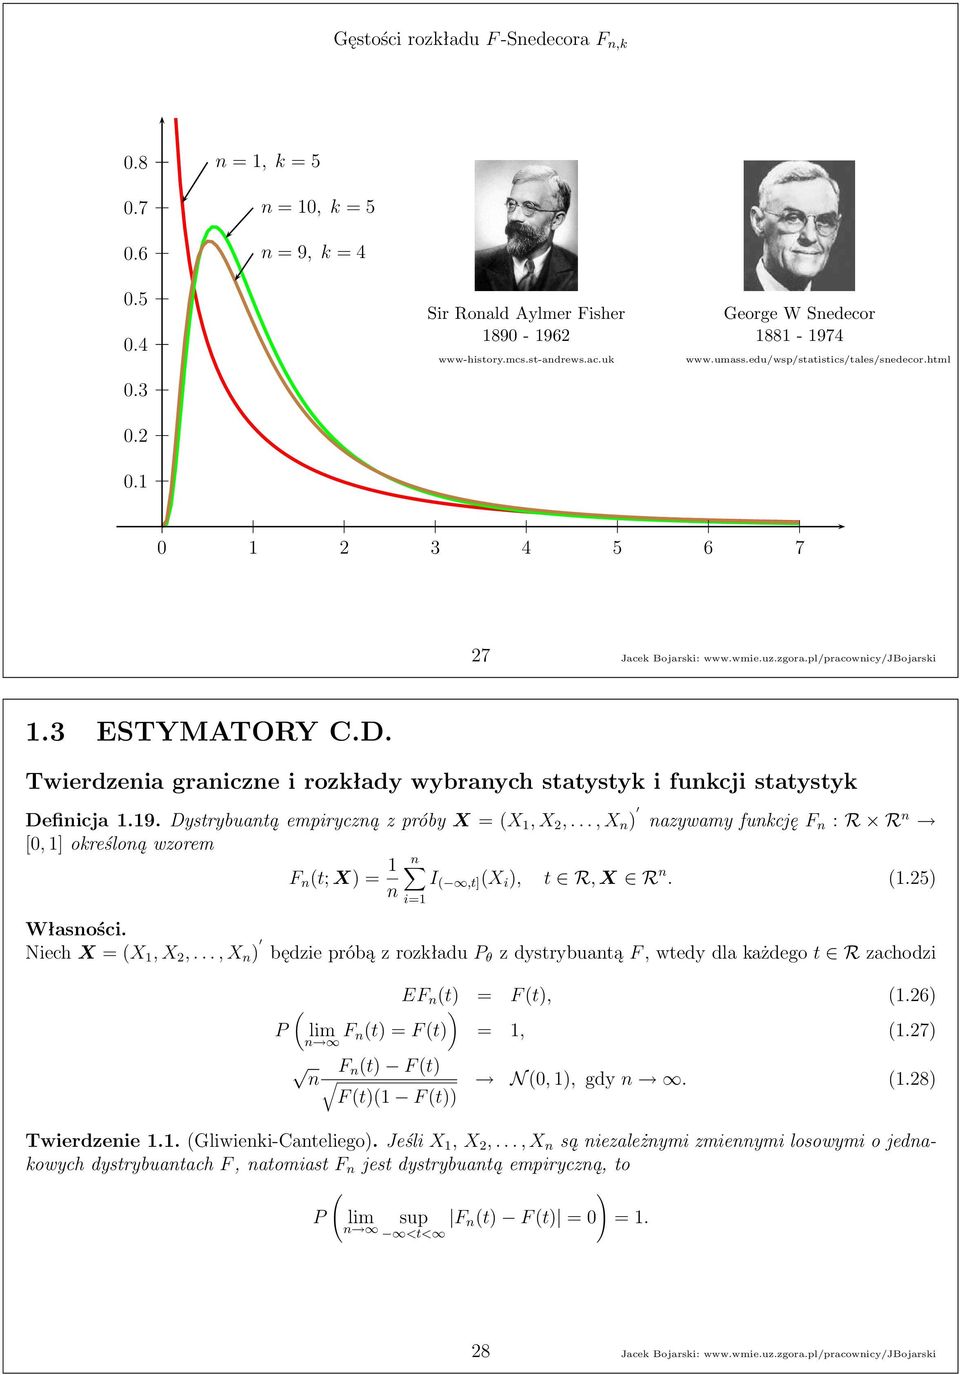 Twierdzenia graniczne i rozkłady wybranych statystyk i funkcji statystyk Definicja1.19.Dystrybuantąempirycznązpróby X = (X 1,X,.